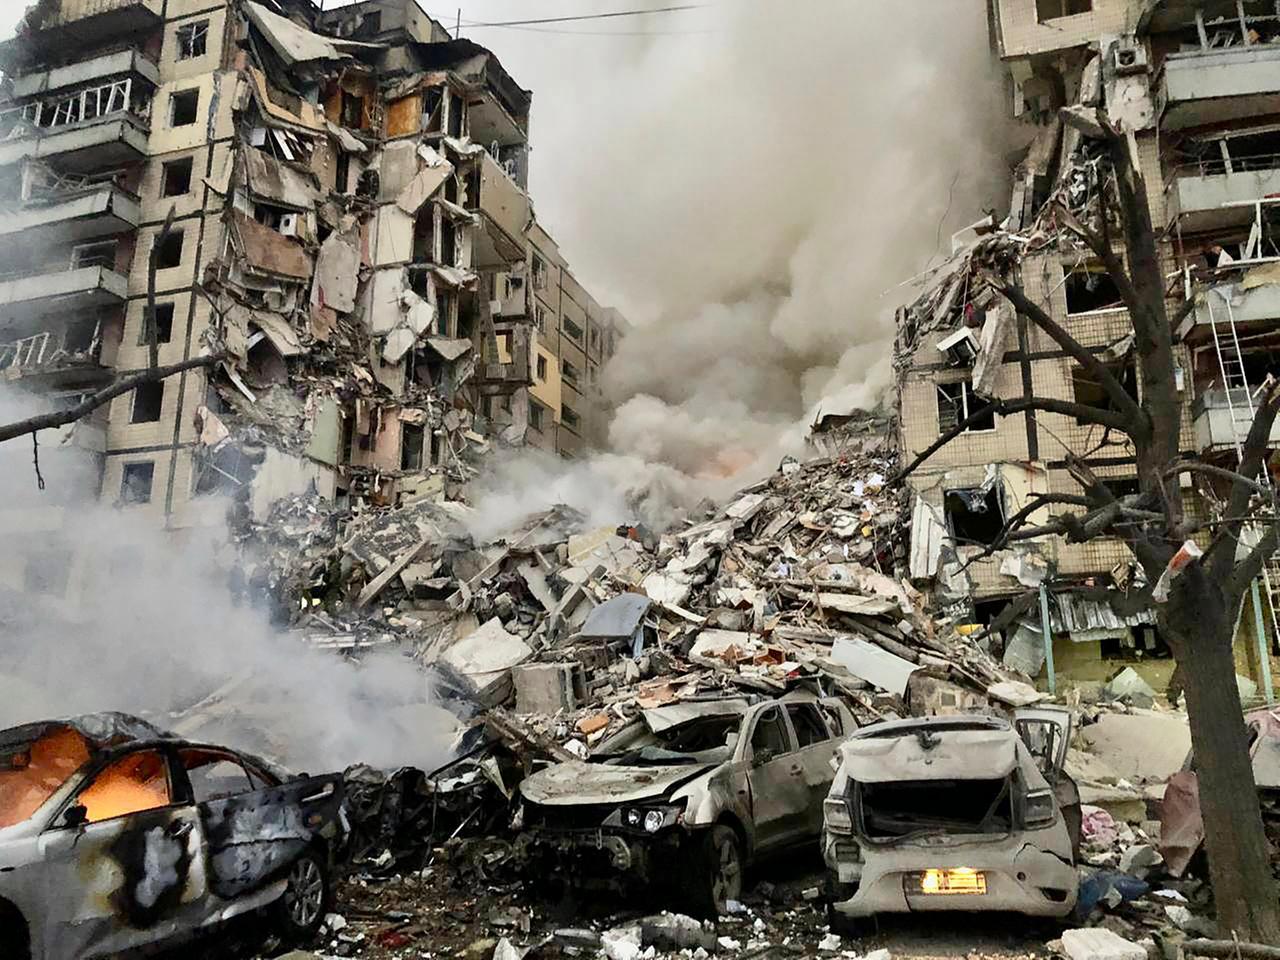 Zu sehen ist eine eingestürzte Häuser-Zeile mit lauter Trümmern.